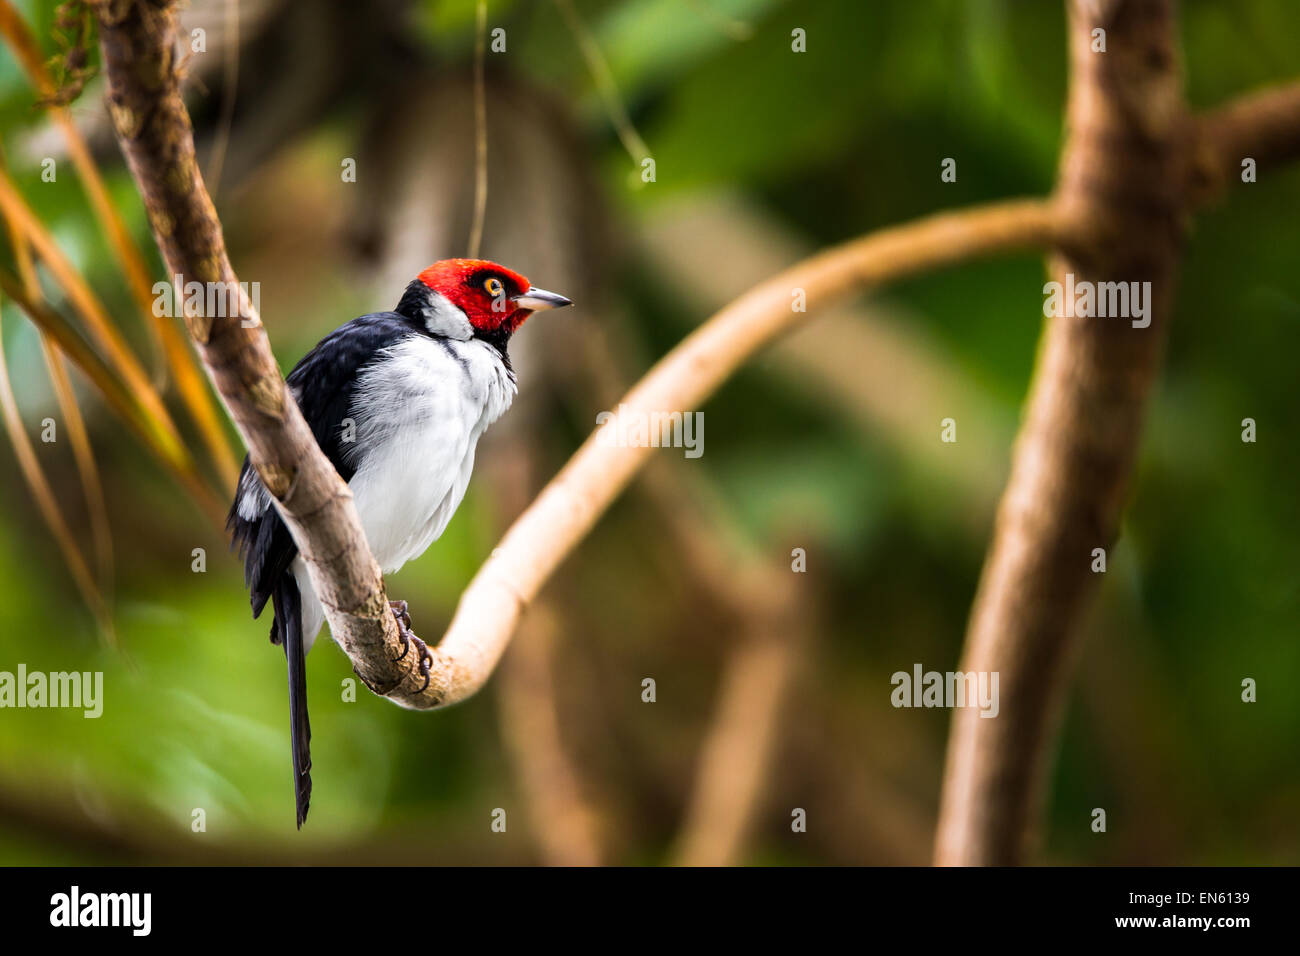 Red-capped cardinal perché sur une branche de la forêt tropicale. Le red-capped cardinal (Paroaria gularis) est un petit oiseau d'Amérique du Sud. Banque D'Images